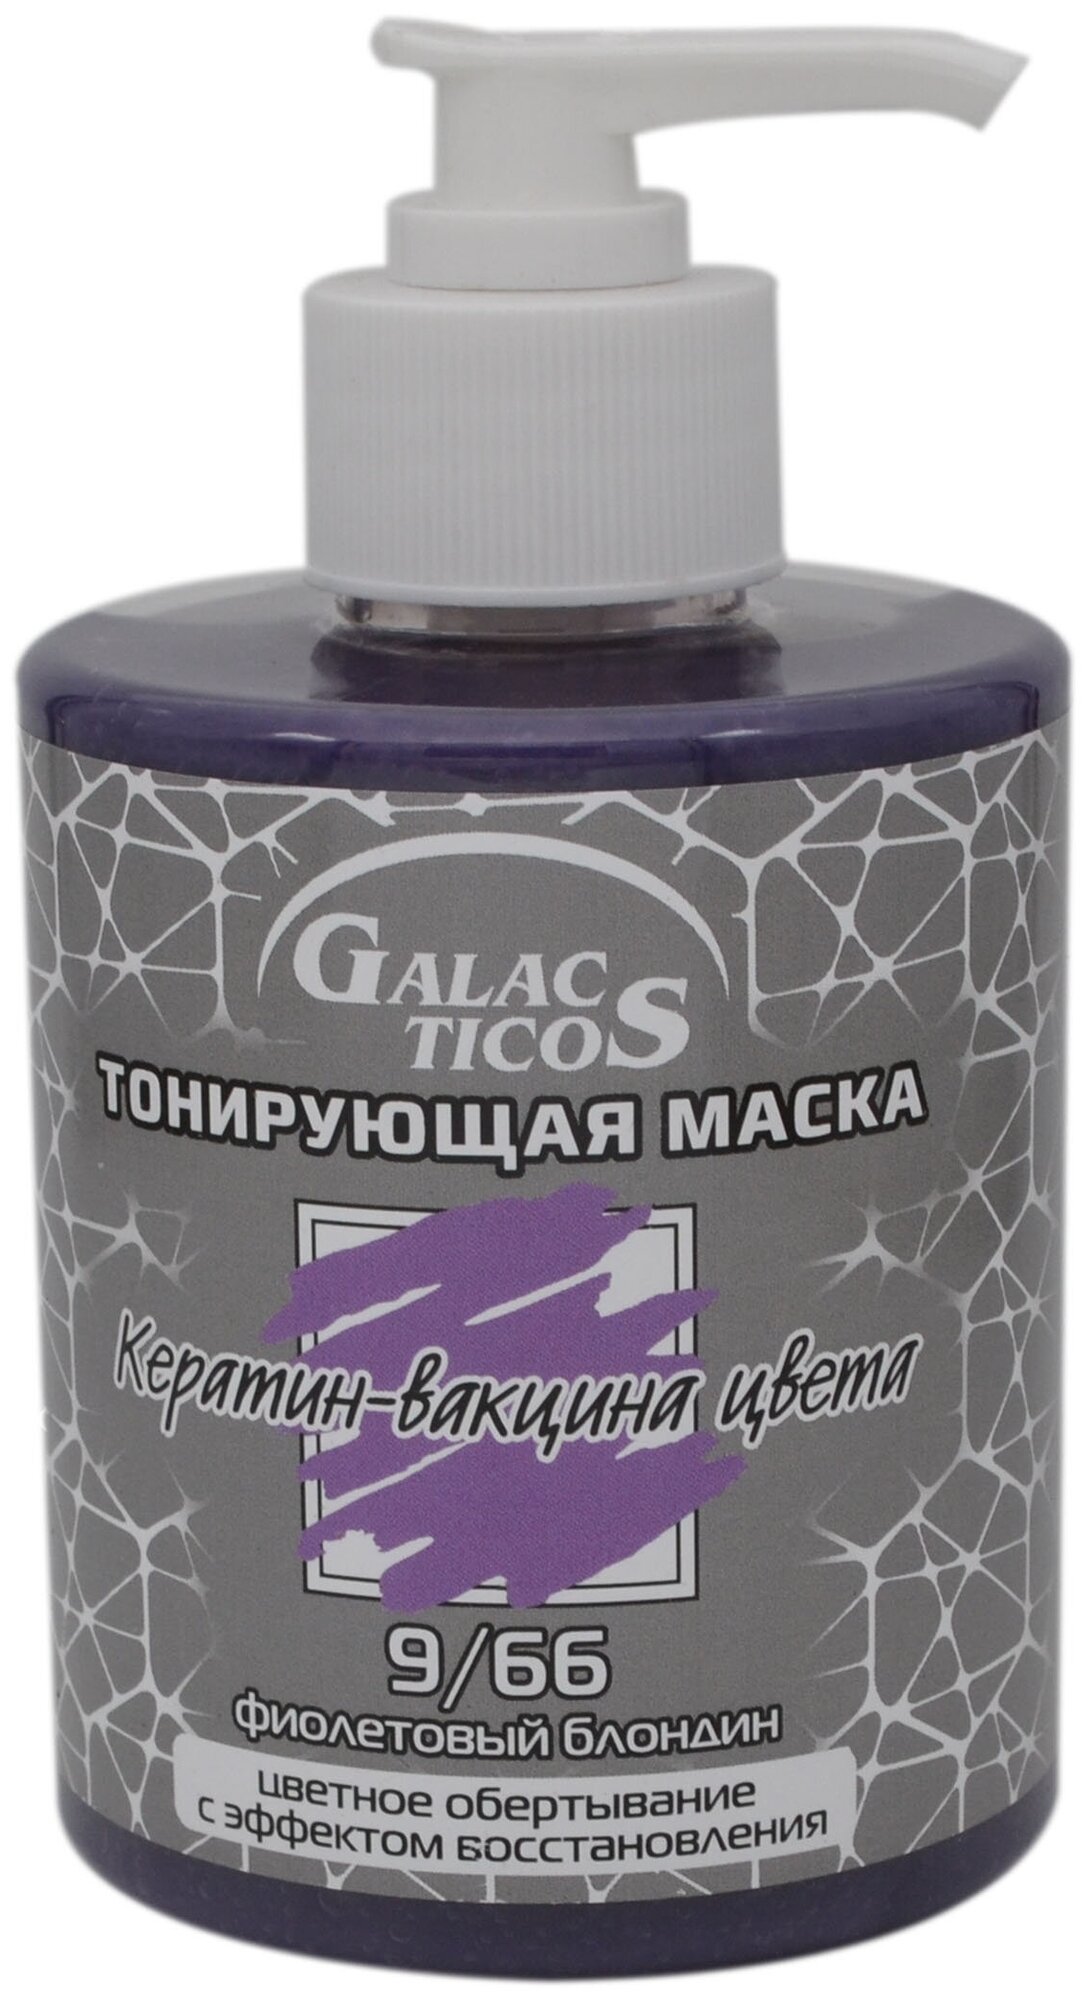 GALACTICOS Маска для волос тонирующая Кератин-вакцина цвета 9/66 Фиолетовый блондин